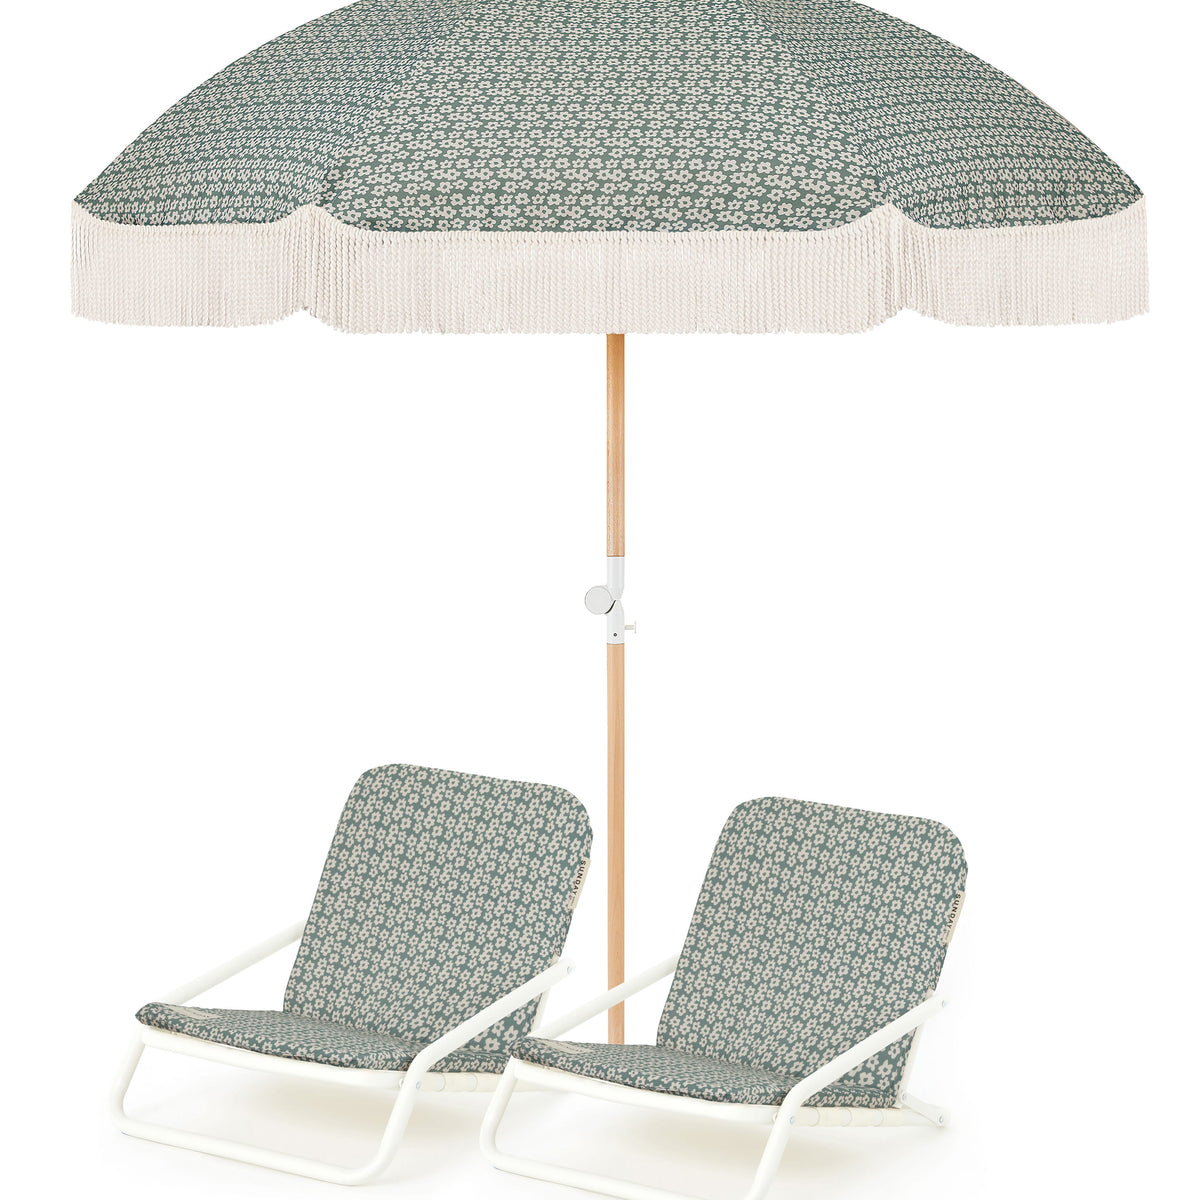 Tallow Flower Beach Umbrella & Beach Chair Set